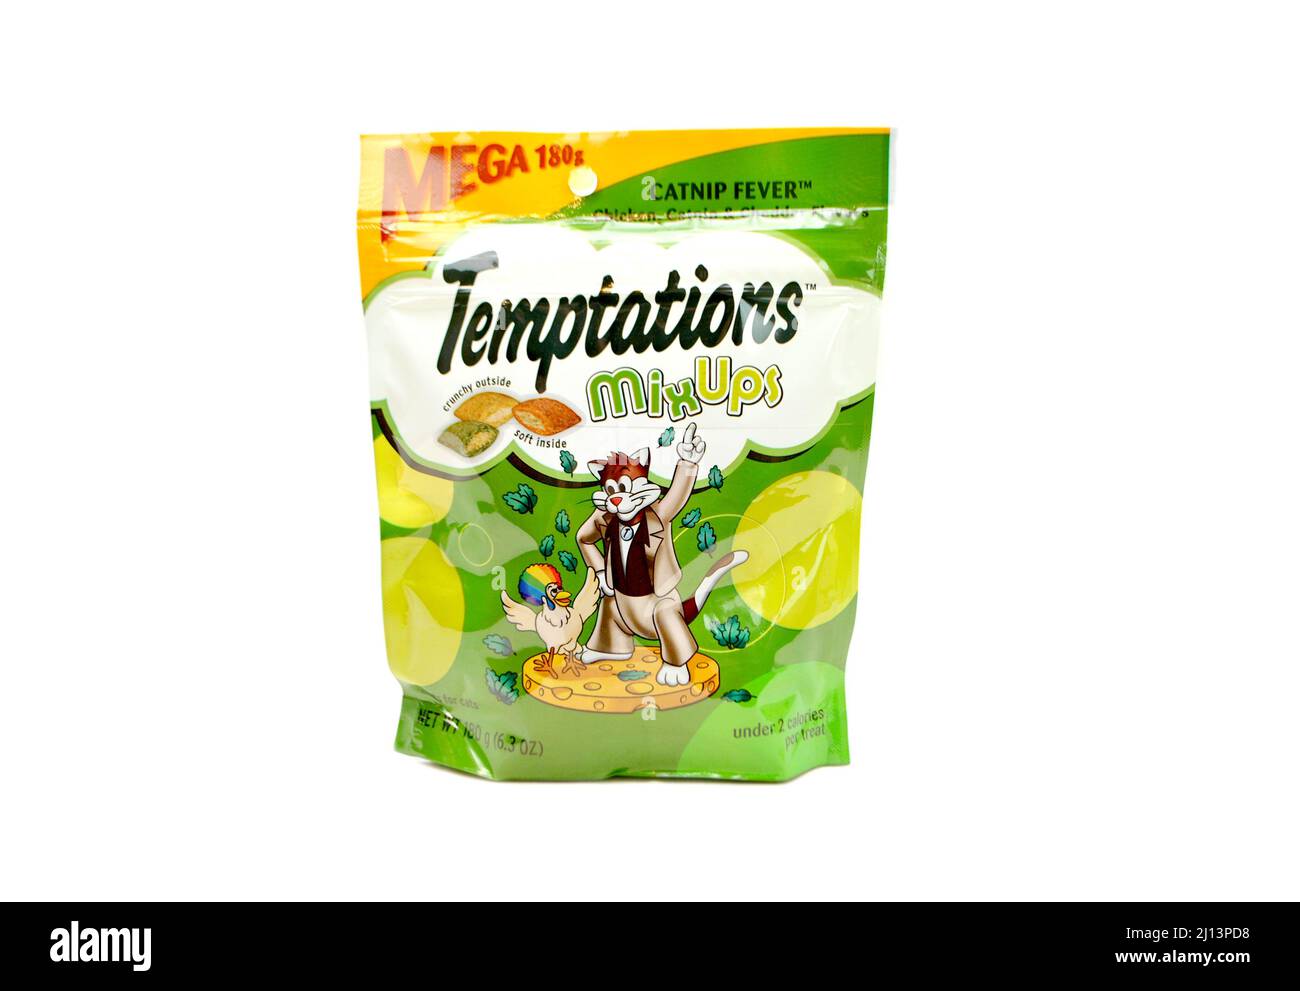 Temptations Cat Treats - Cat Nip Fever Flavor Stock Photo